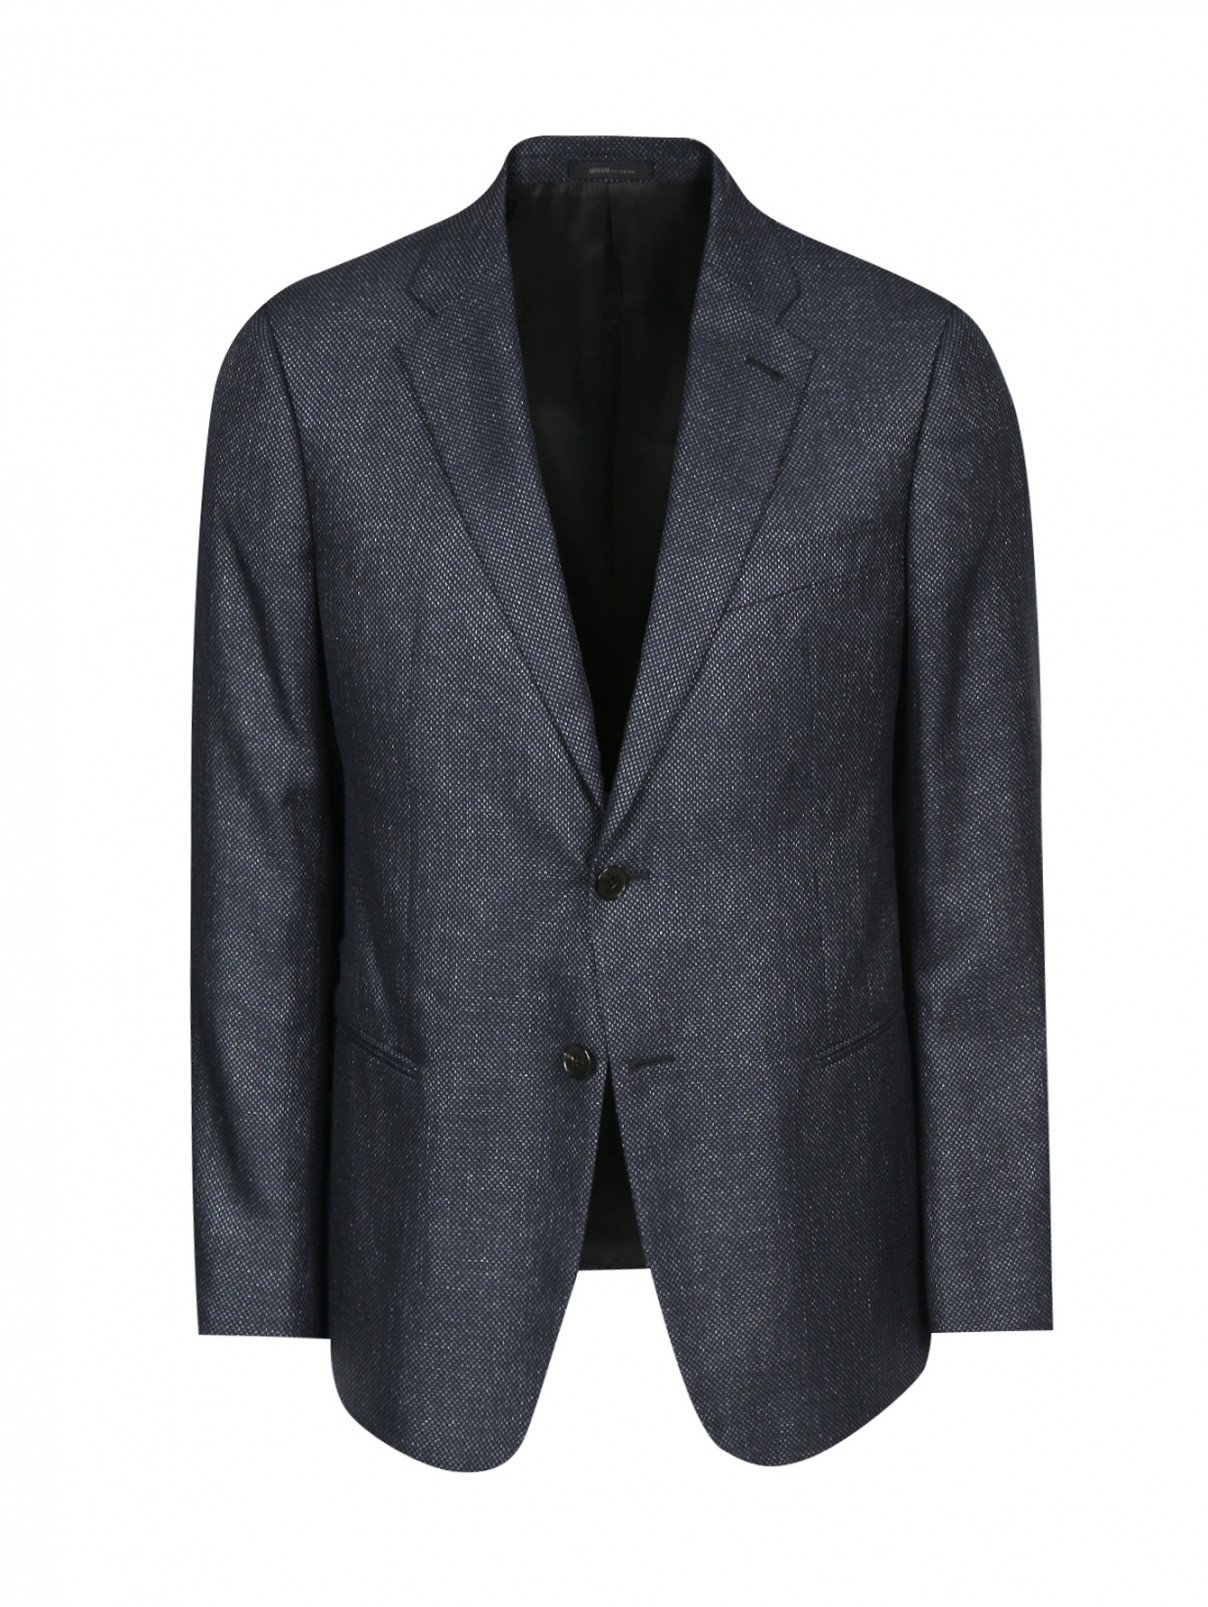 Пиджак однобортный из шерсти и шелка Armani Collezioni  –  Общий вид  – Цвет:  Синий